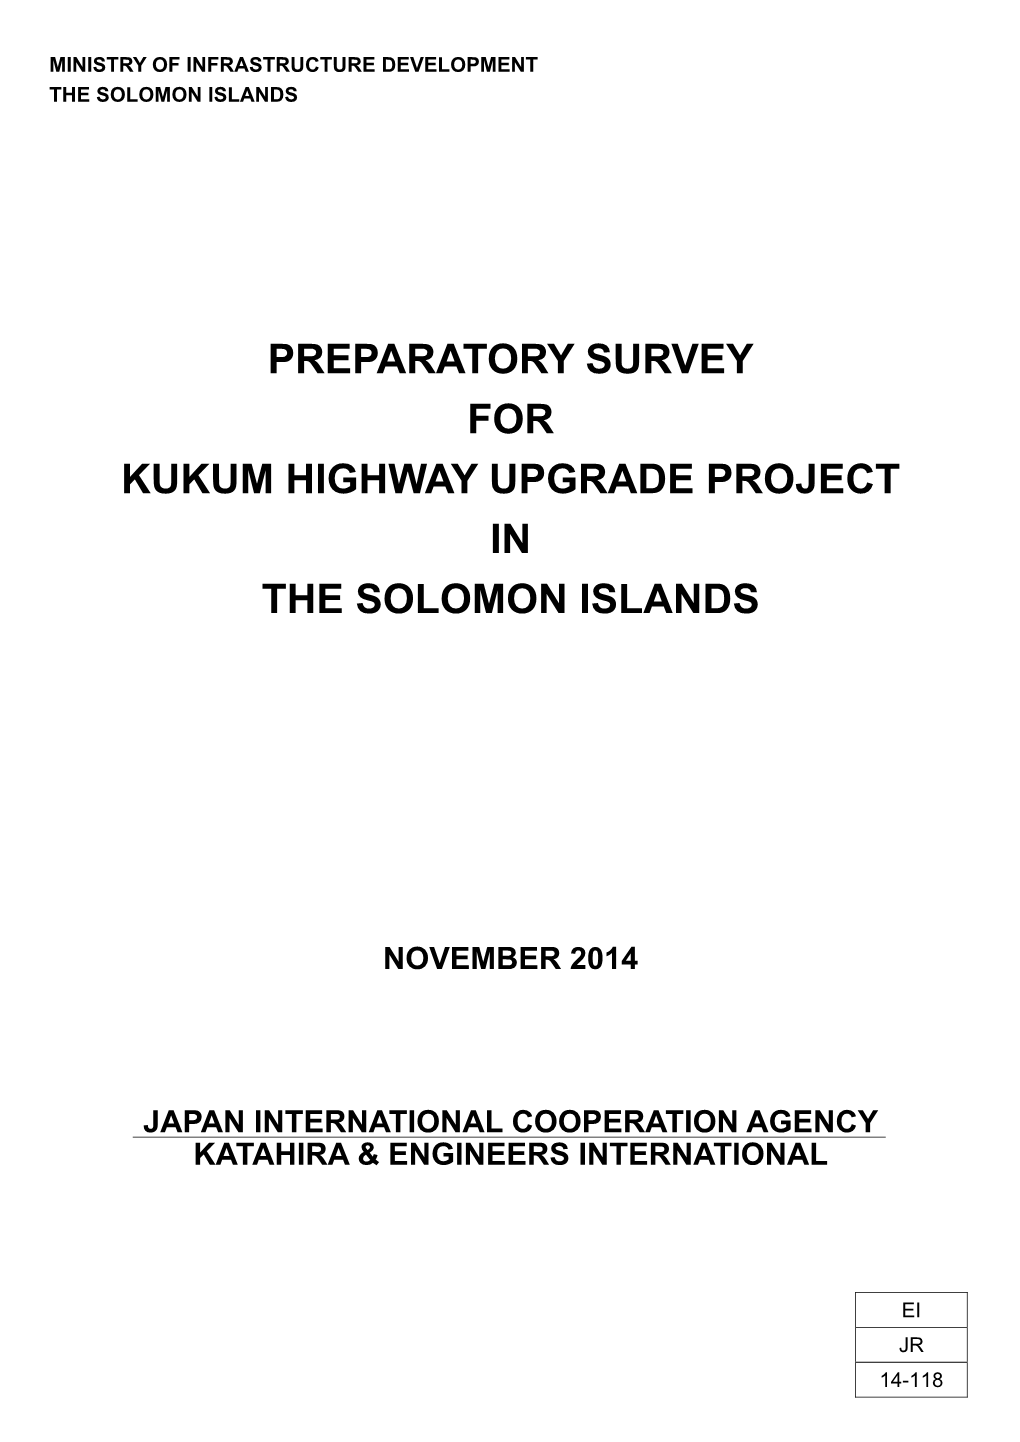 Preparatory Survey for Kukum Highway Upgrade Project in the Solomon Islands